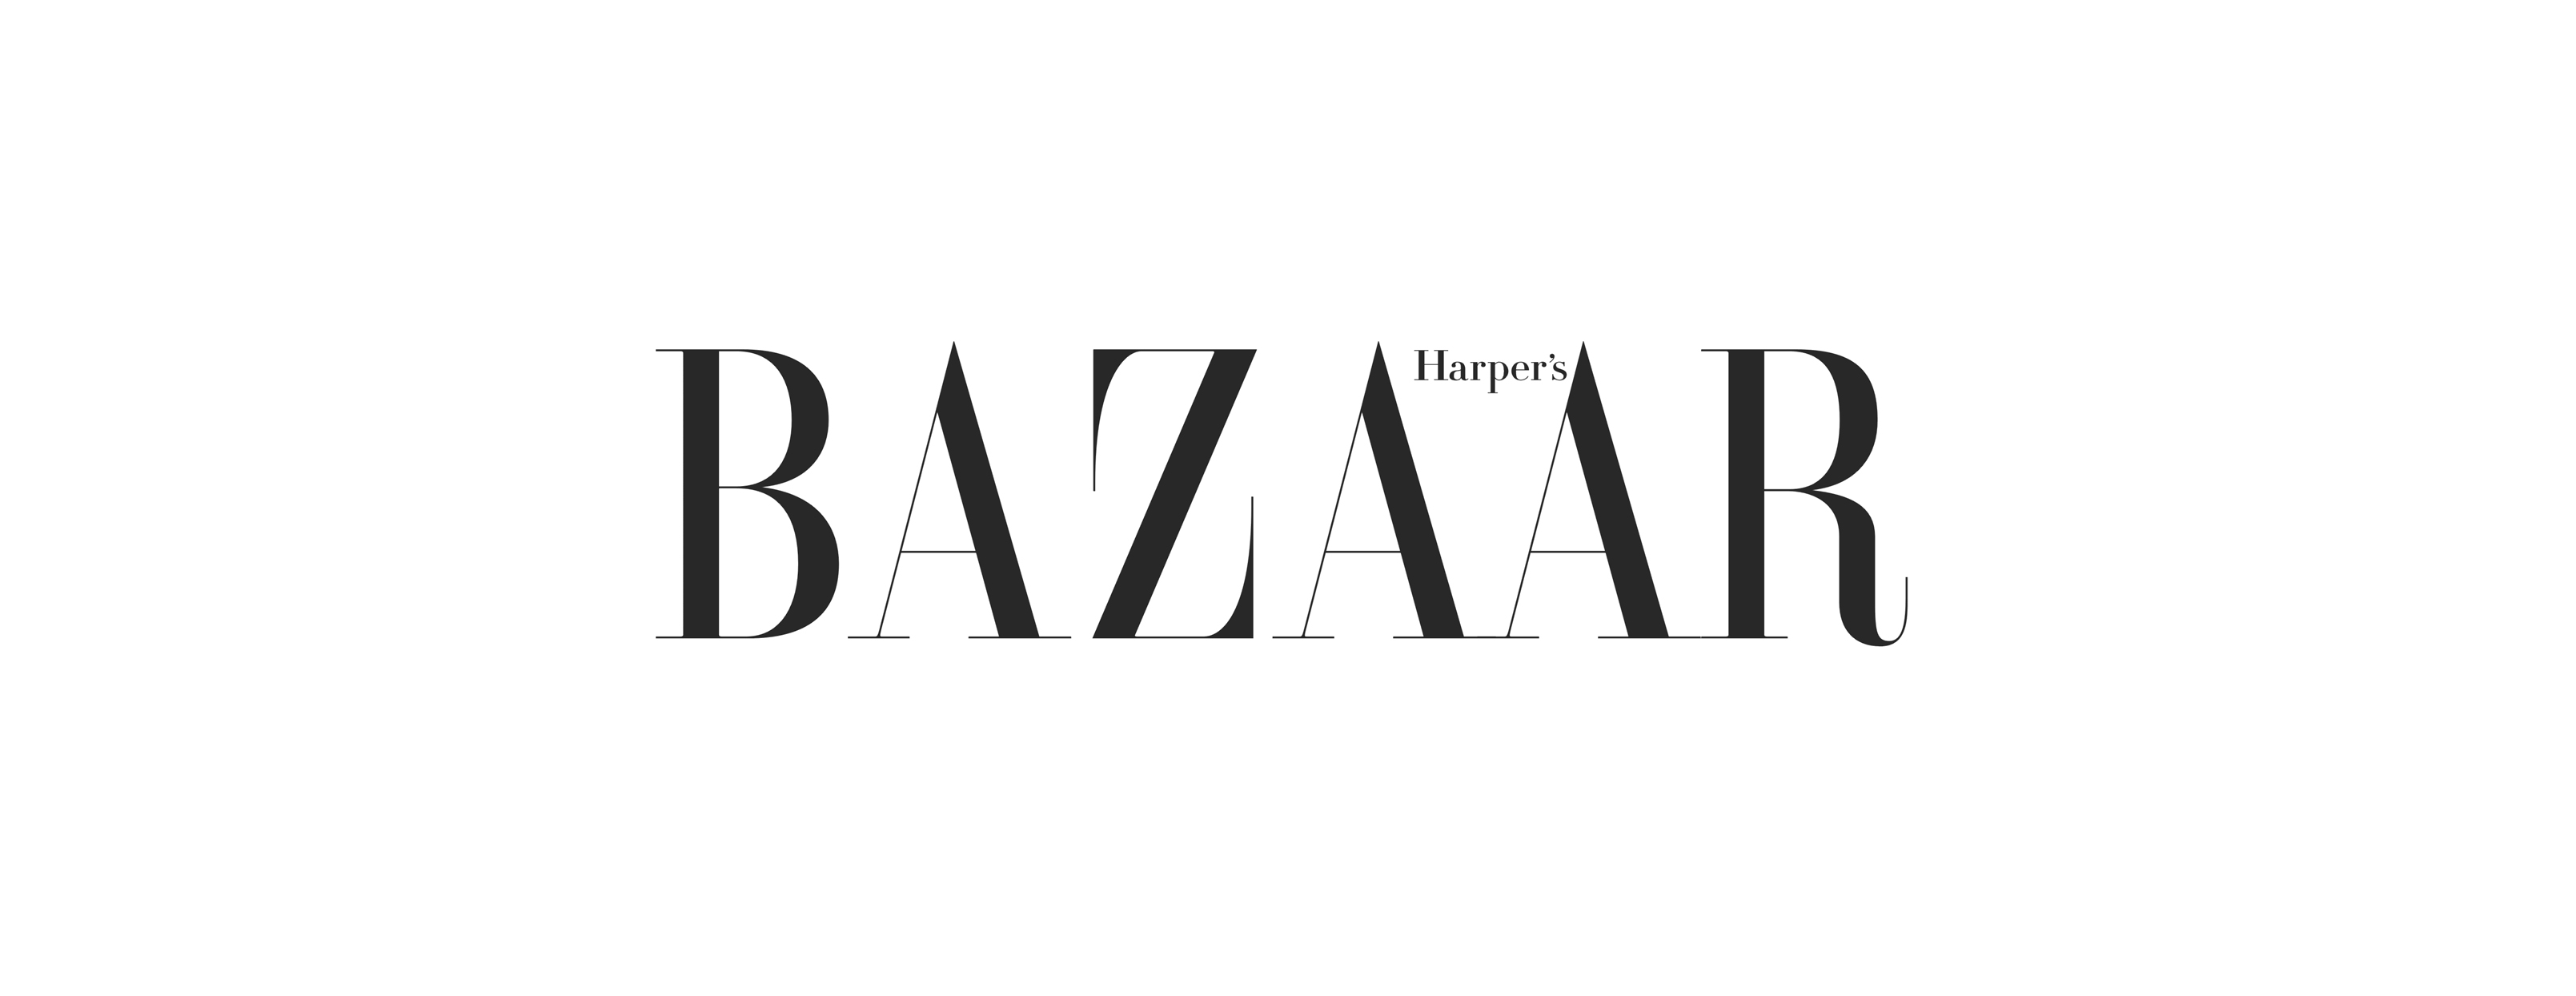 harpers bazaar